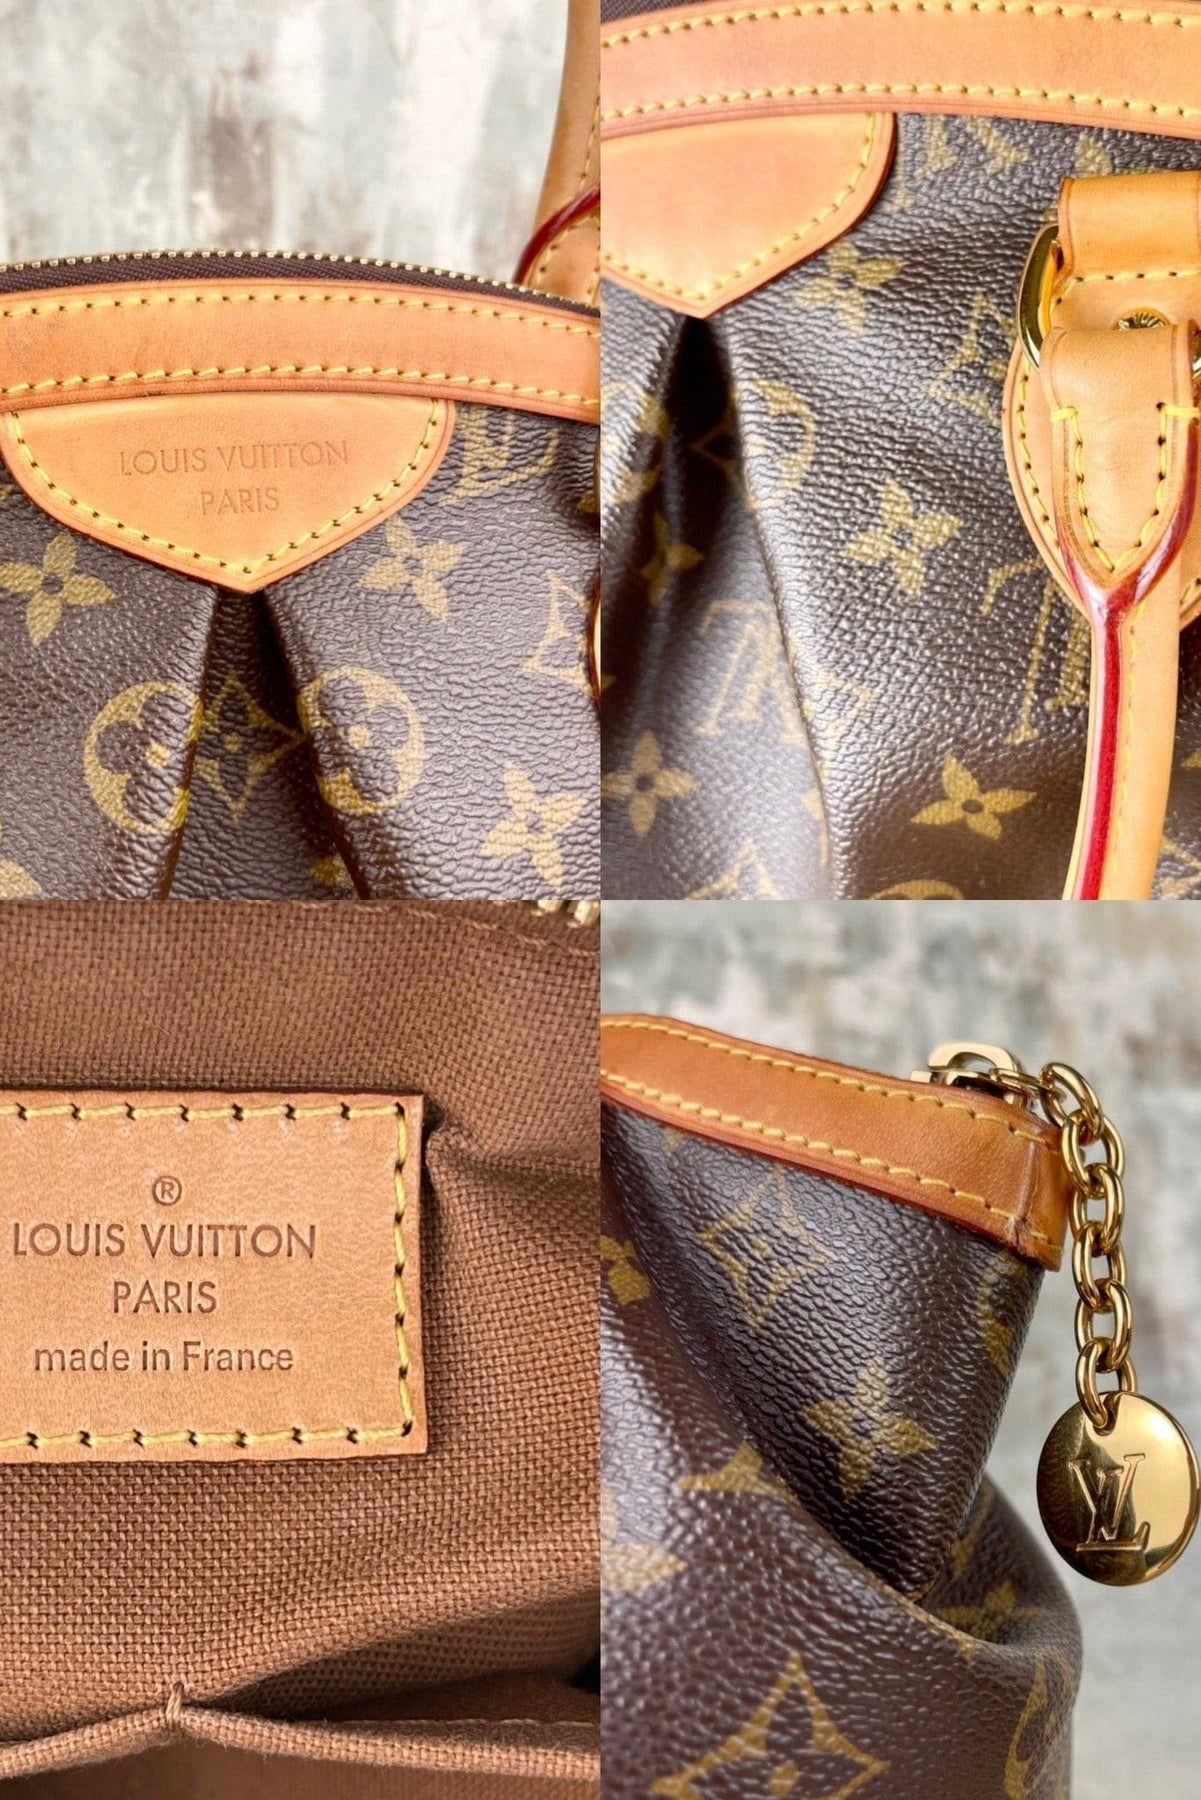 Louis Vuitton Tivoli Gm Or Pm